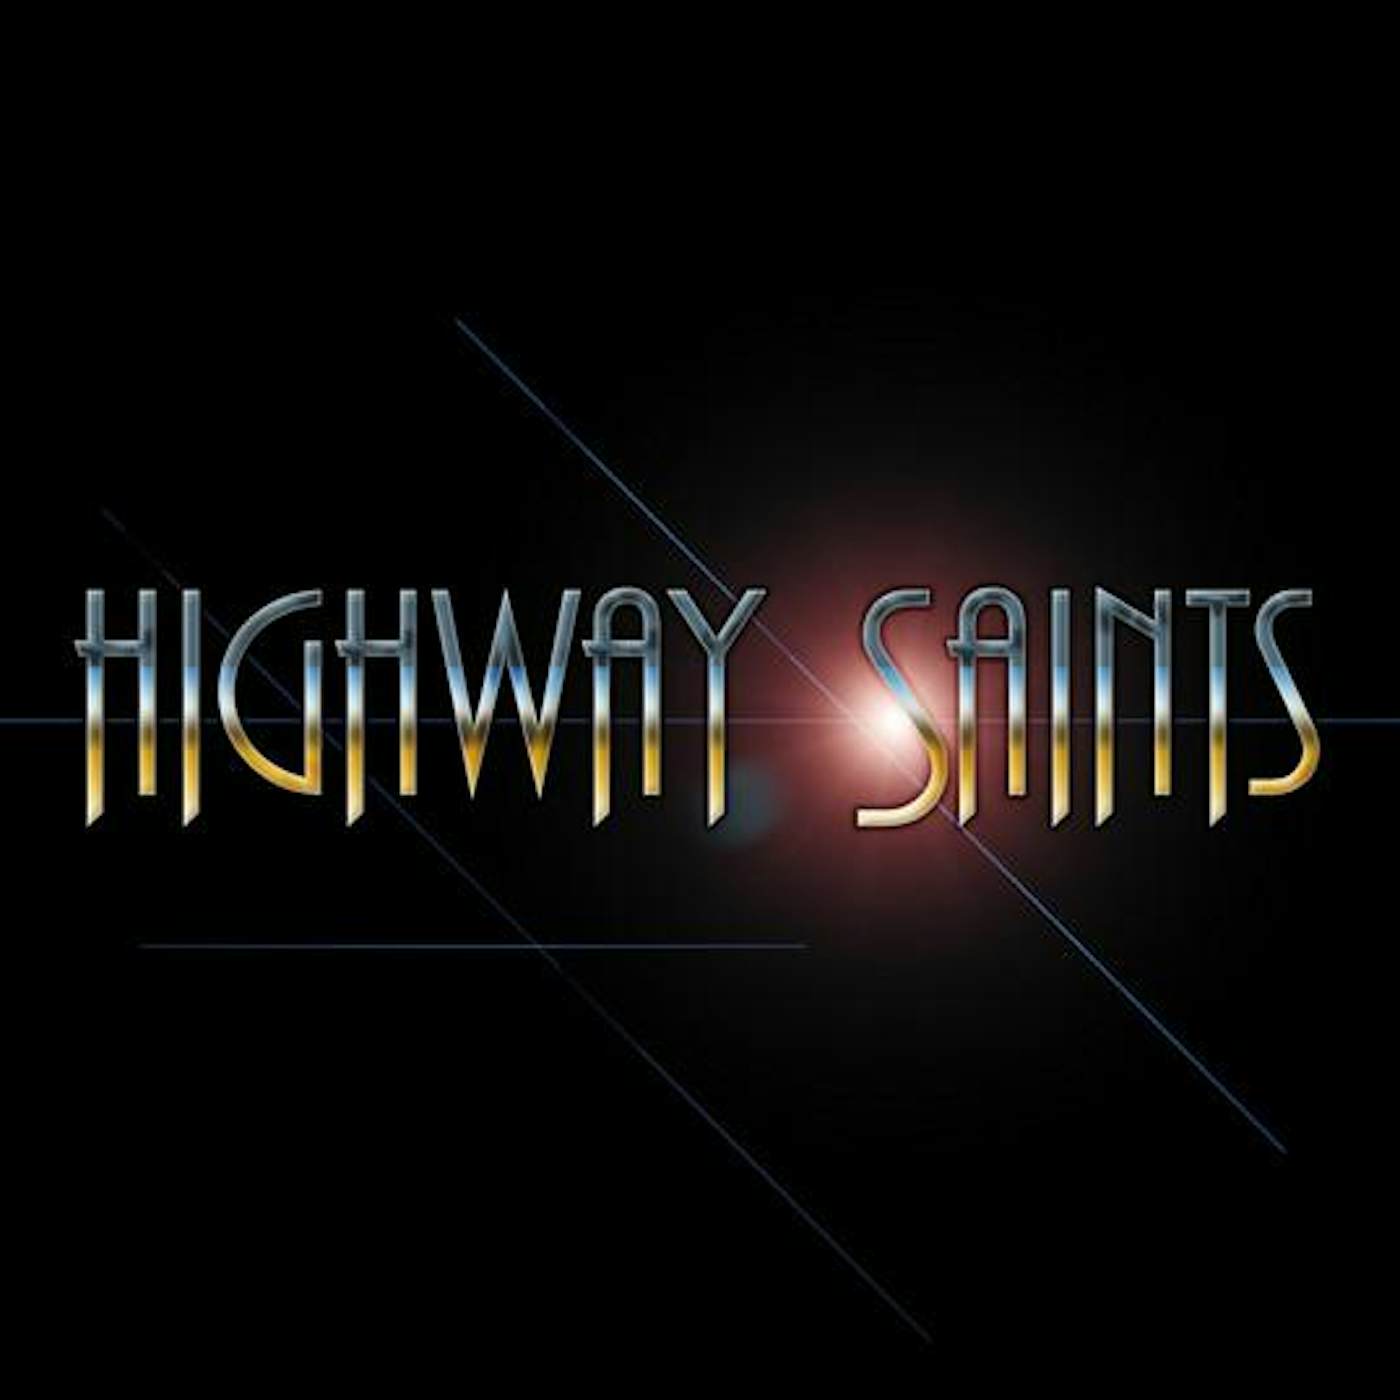 Highway Saints